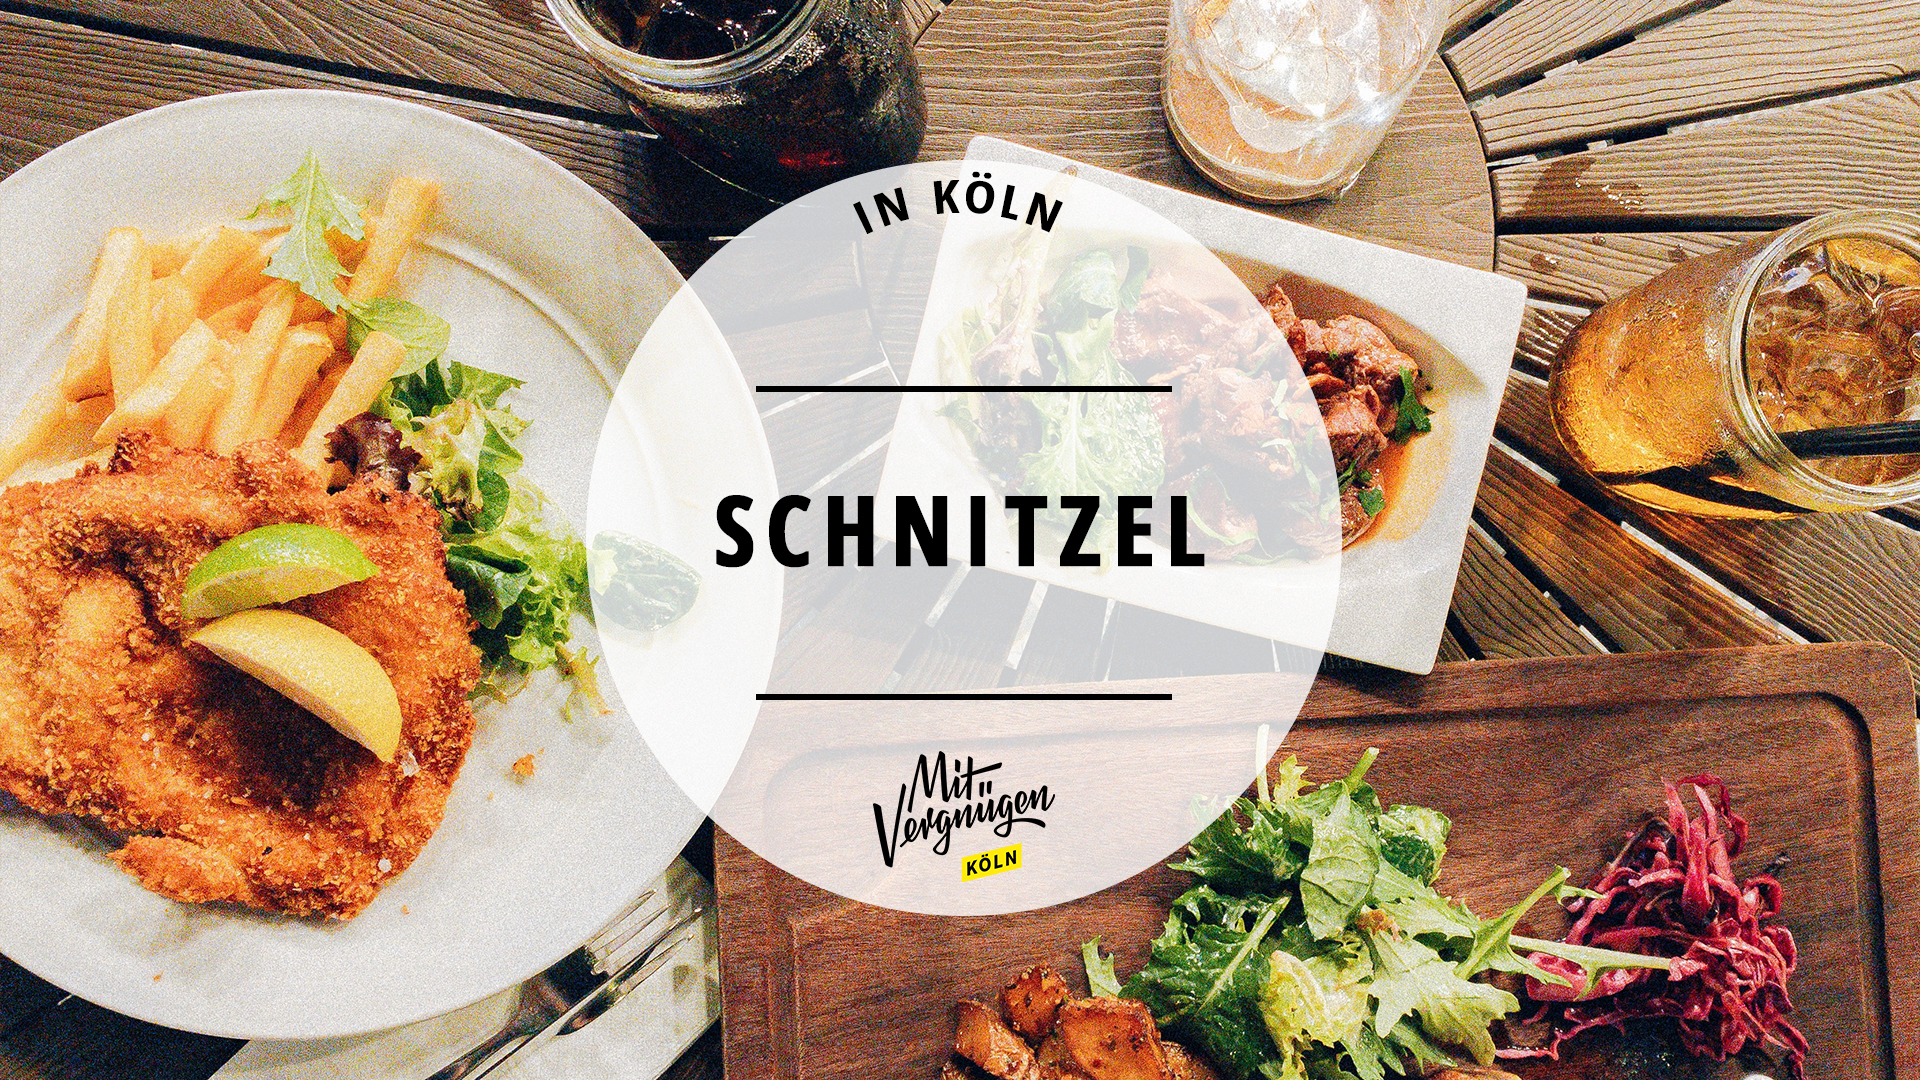 #11 Restaurants in Köln, in denen ihr richtig leckere Schnitzel essen könnt